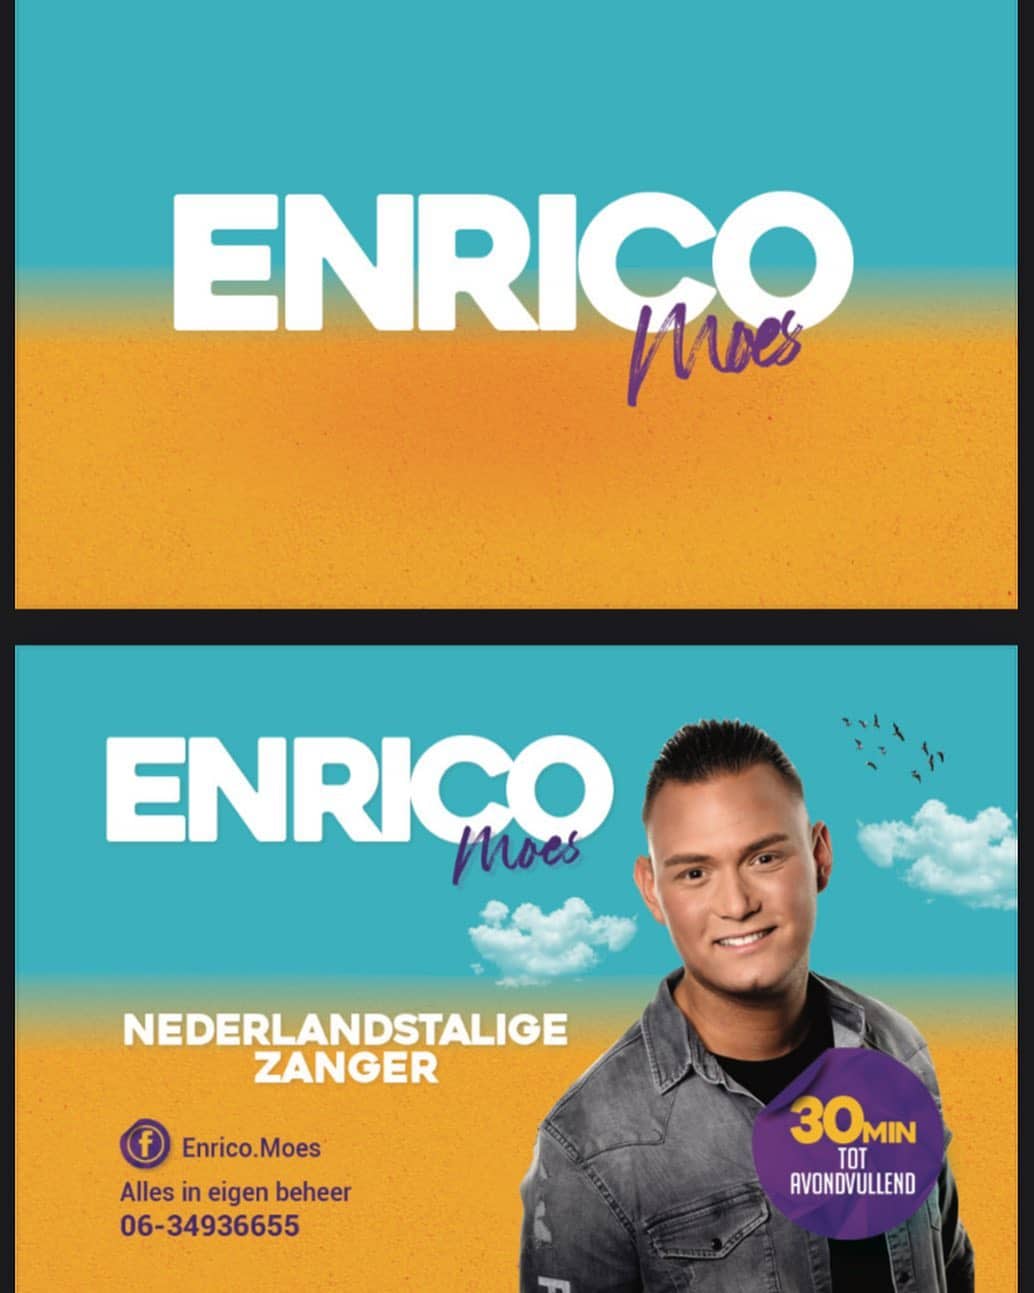 Visitekaartjes! 🤩 Ontwerp en drukwerk voor zanger Enrico Moes! 😎
Mail naar: info@artiestontwerp.nl 💪🏻